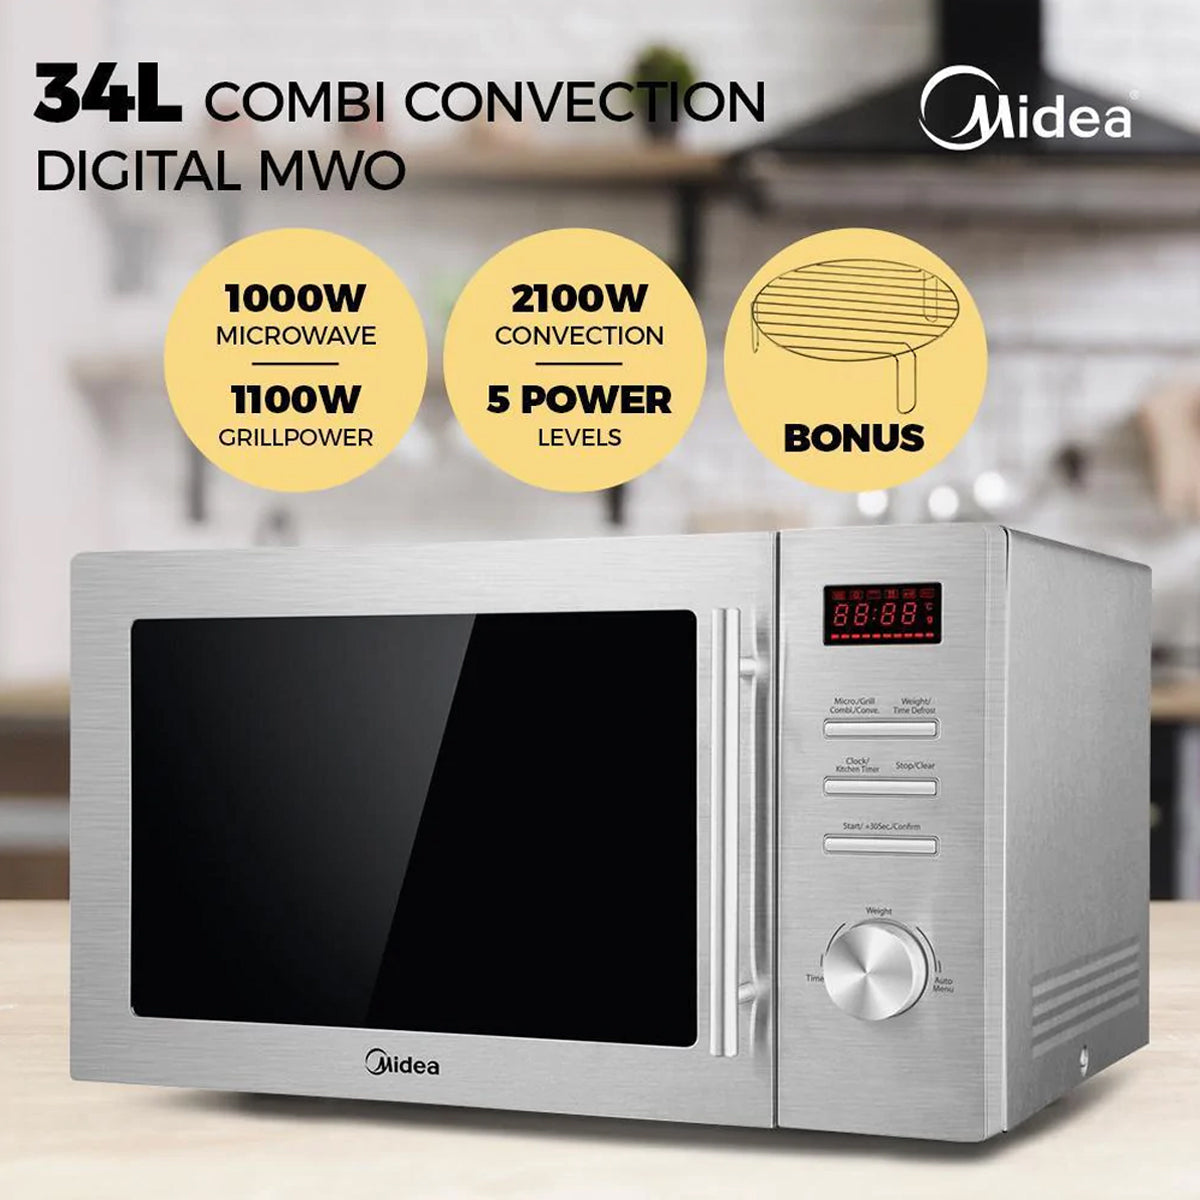 Midea 34L Combi Convection Digital Microwave